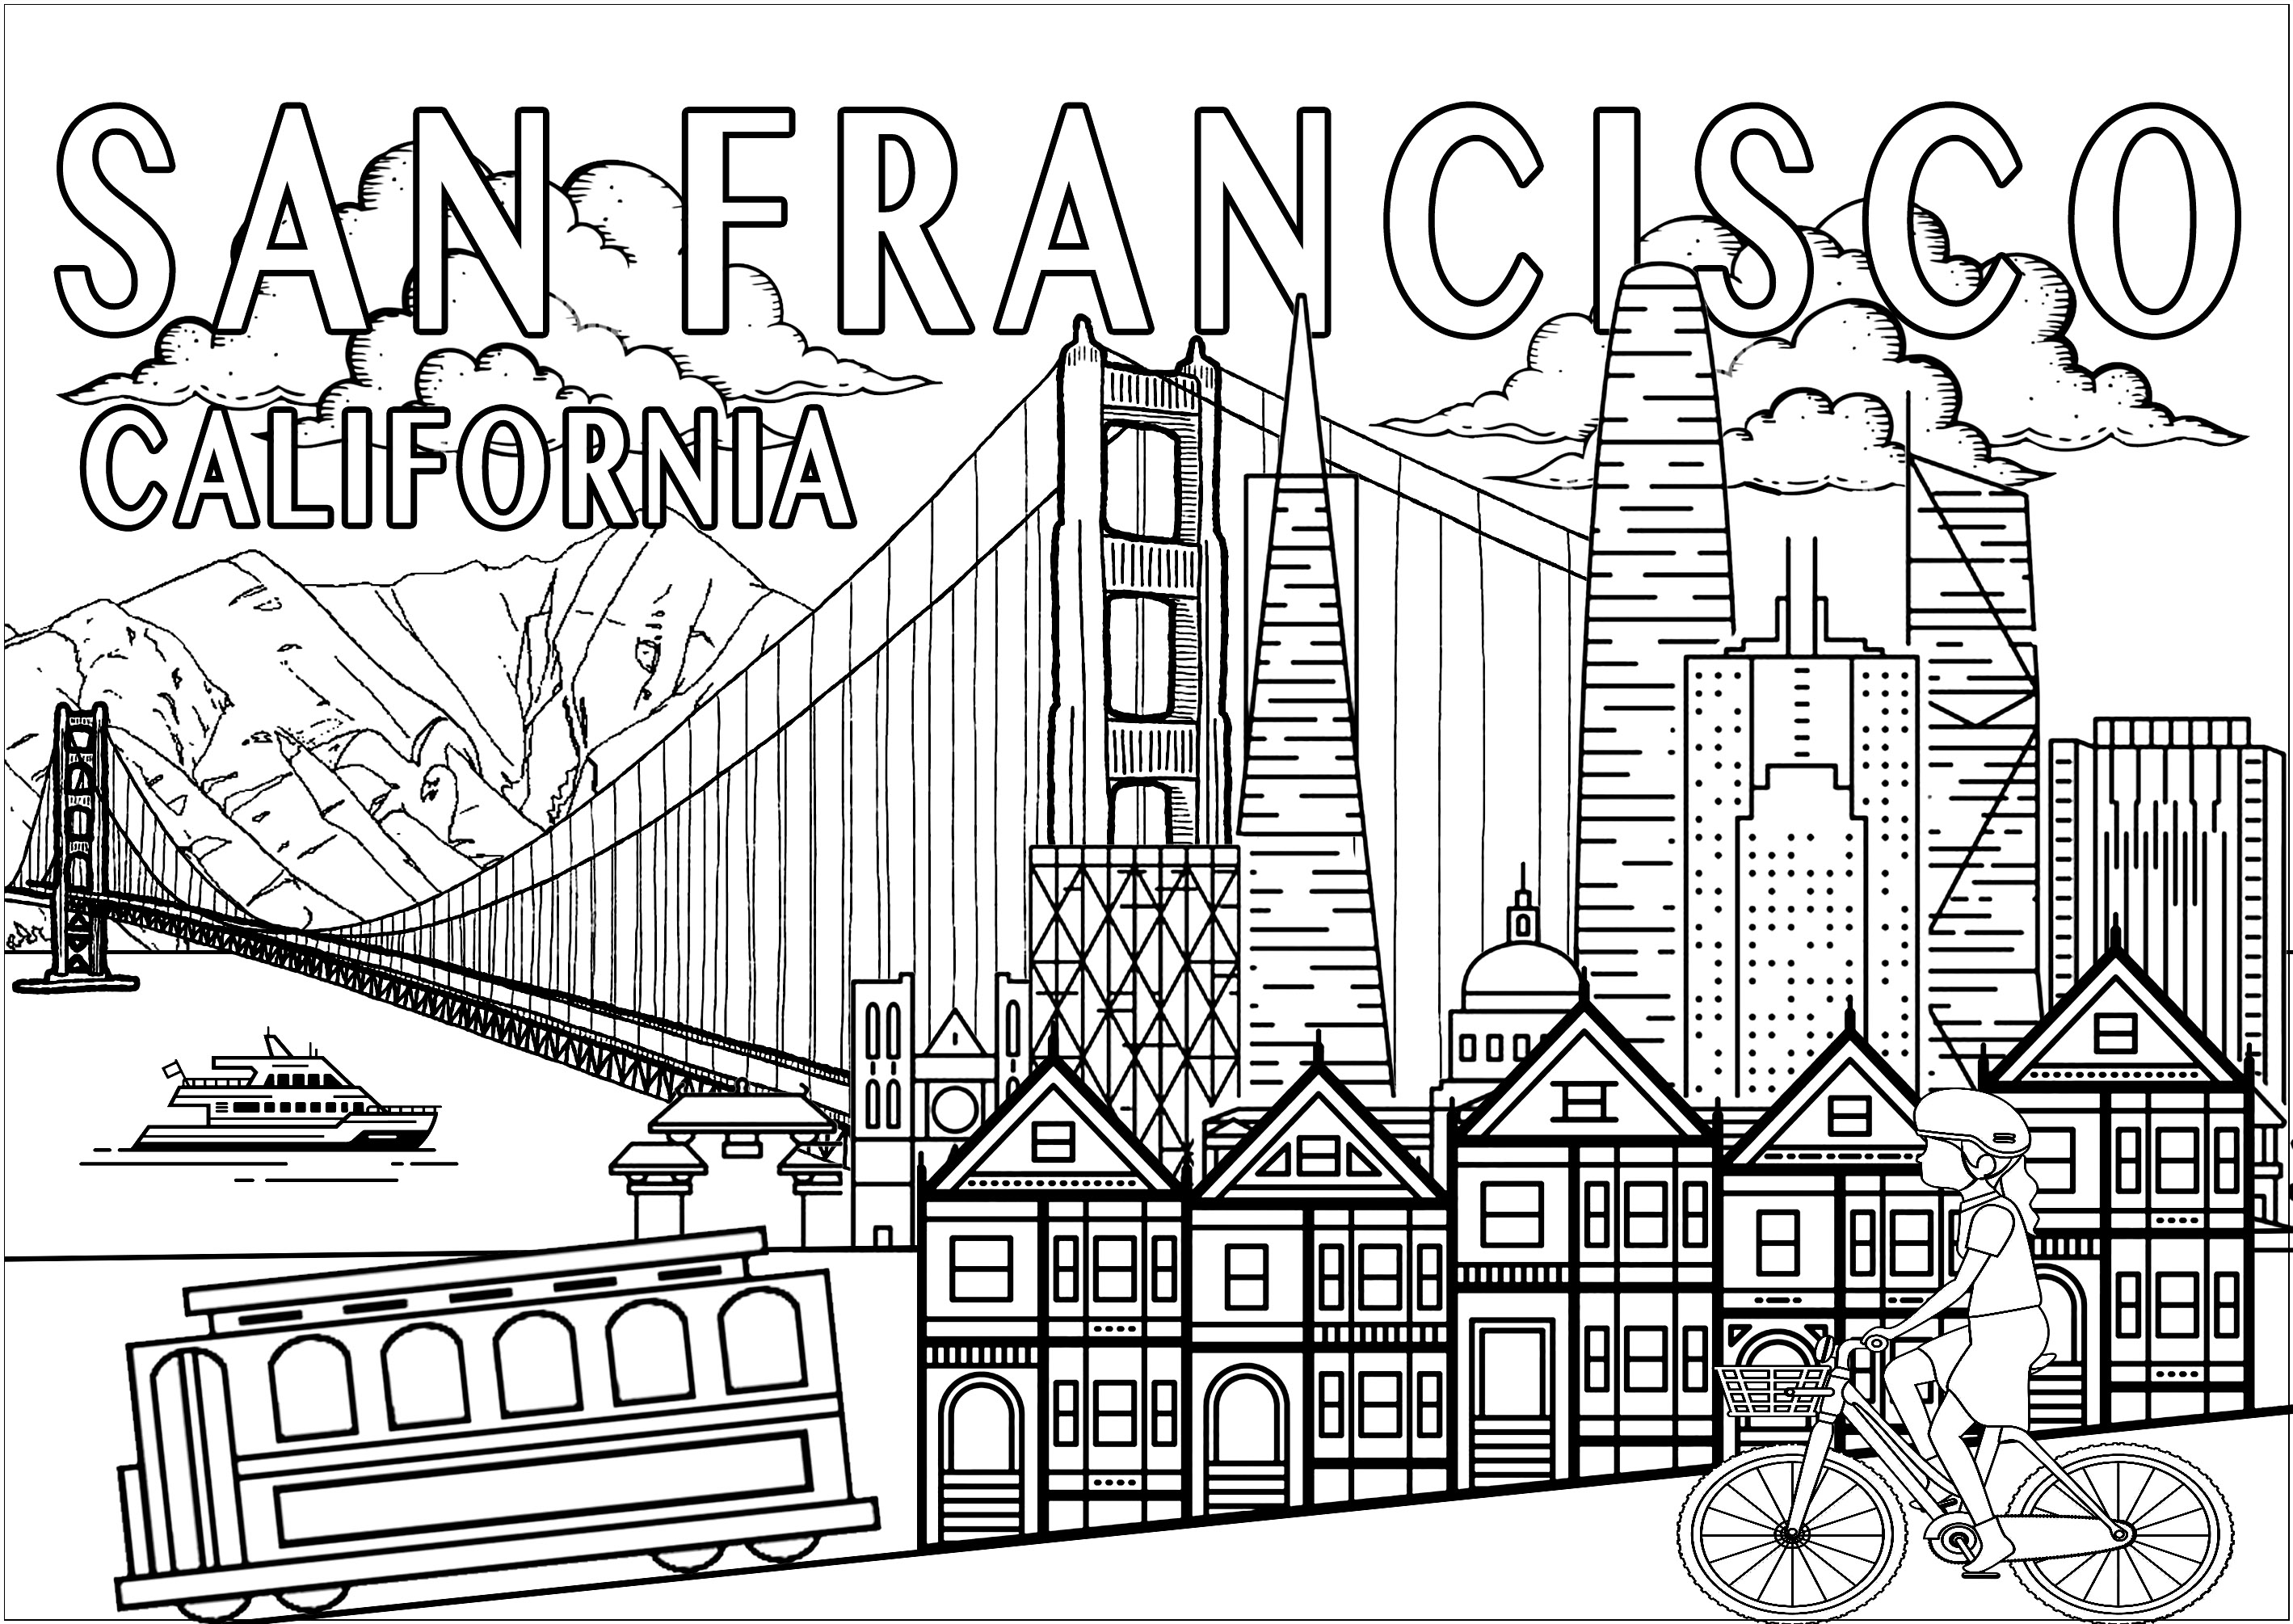 Malen Sie die wichtigsten Denkmäler und Symbole von San Francisco aus!. Das Golden Gate, die Painted Ladies, die Straßenbahn, die Skyline mit dem Coit Tower... San Francisco, die 'Stadt an der Bucht', ist eine der emblematischsten Städte der Vereinigten Staaten. Ein Muss auf jeder Reise nach Kalifornien!, Künstler : Olivier